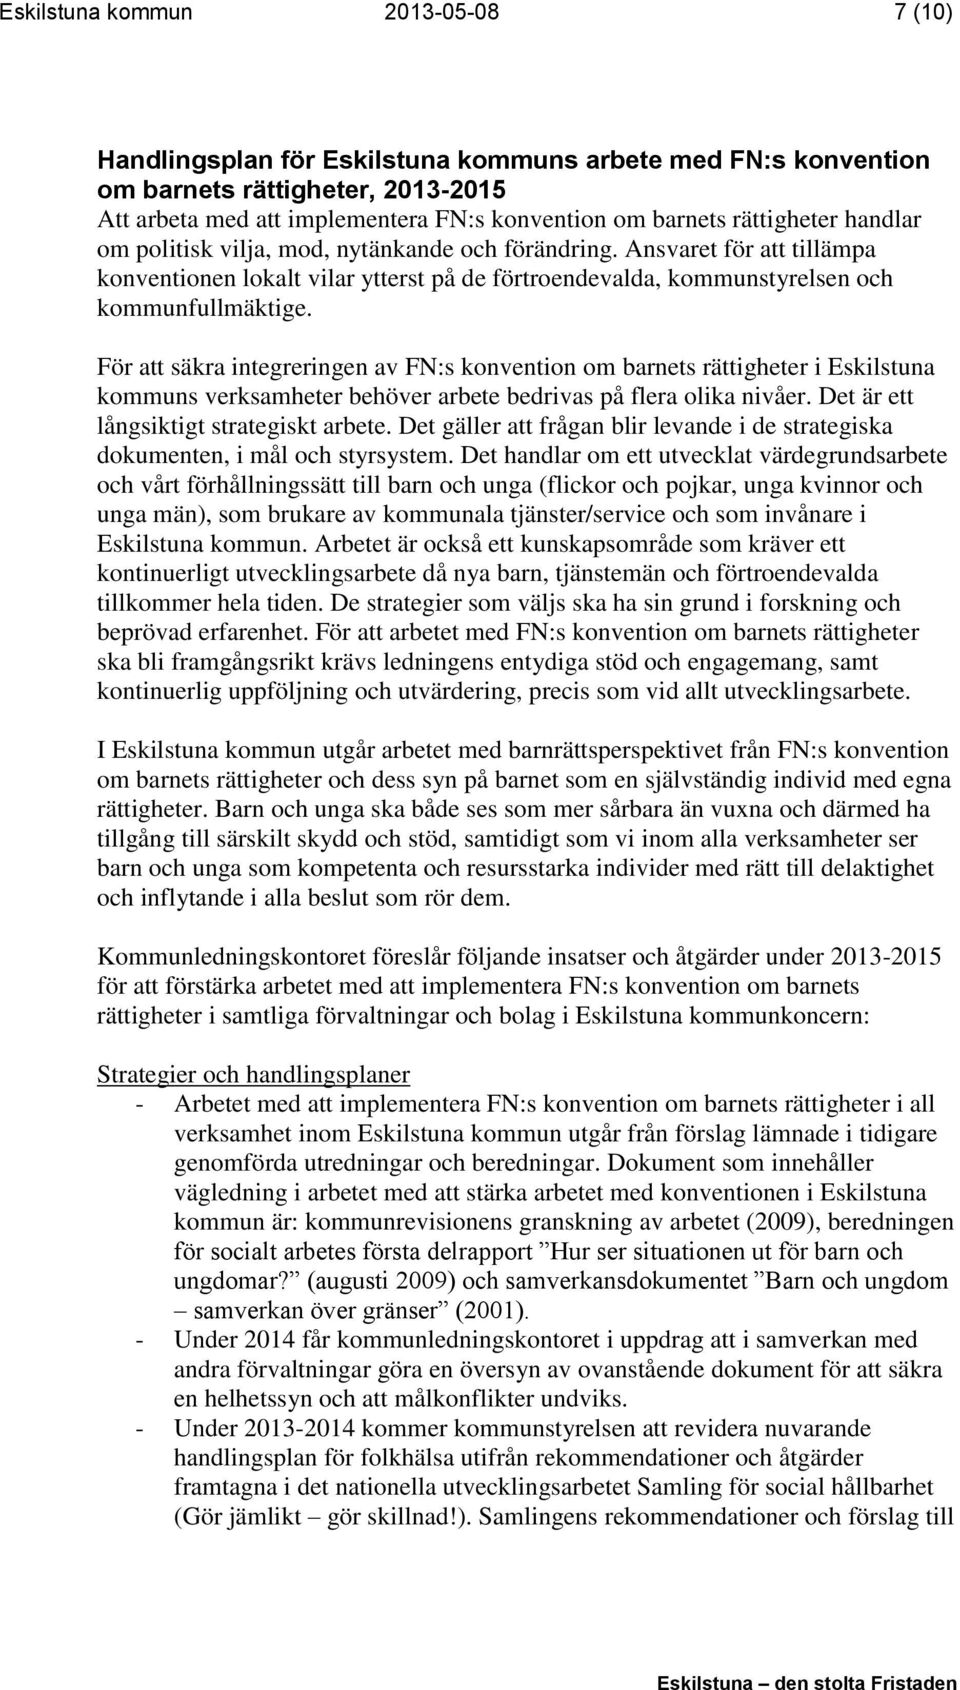 För att säkra integreringen av FN:s konvention om barnets rättigheter i Eskilstuna kommuns verksamheter behöver arbete bedrivas på flera olika nivåer. Det är ett långsiktigt strategiskt arbete.